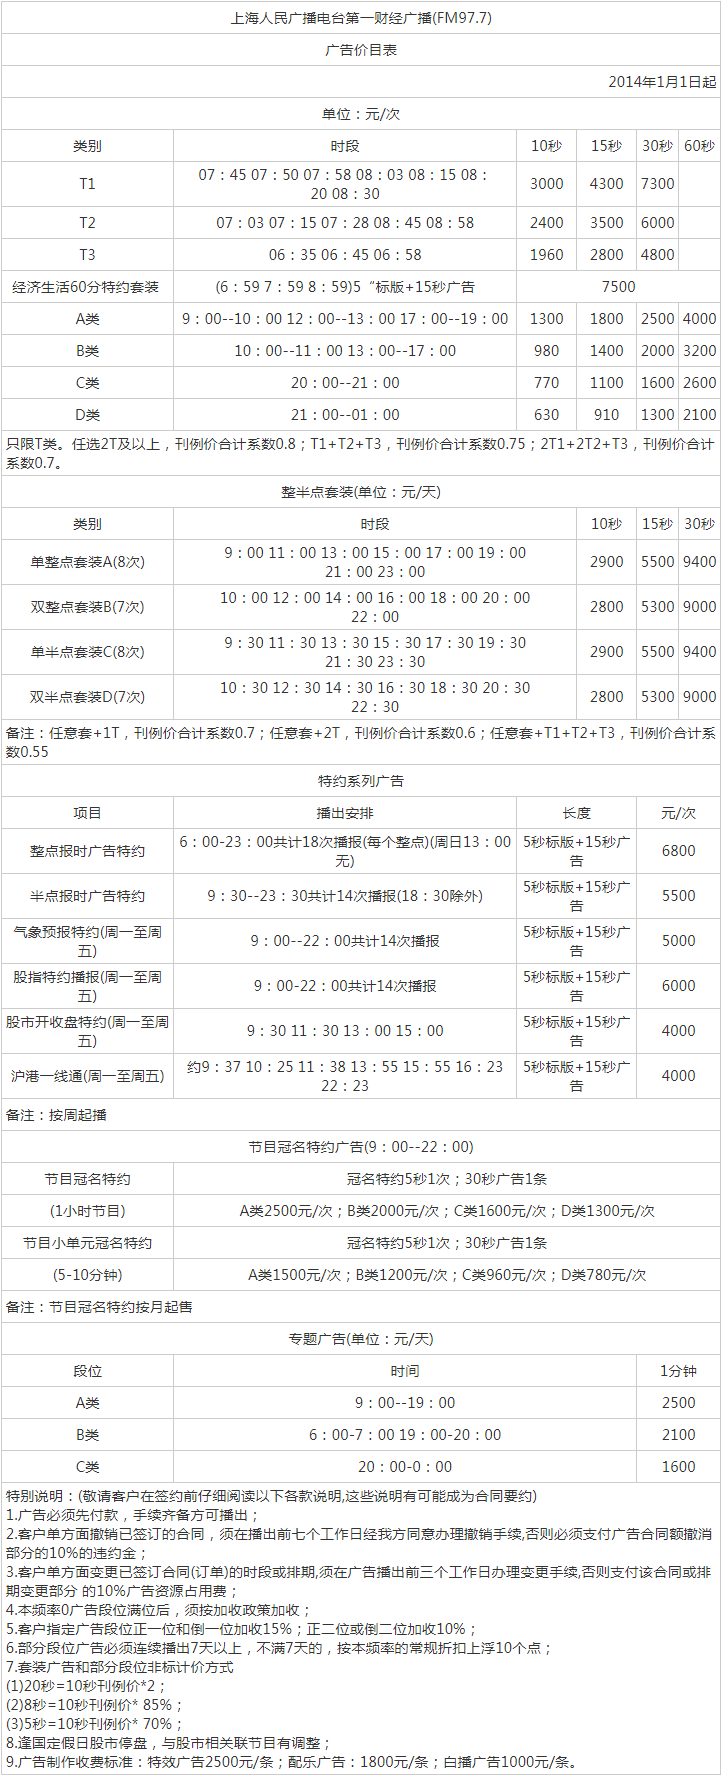 2014上海人民广播电台第一财经 AM1422_FM97.7广告报价表.png